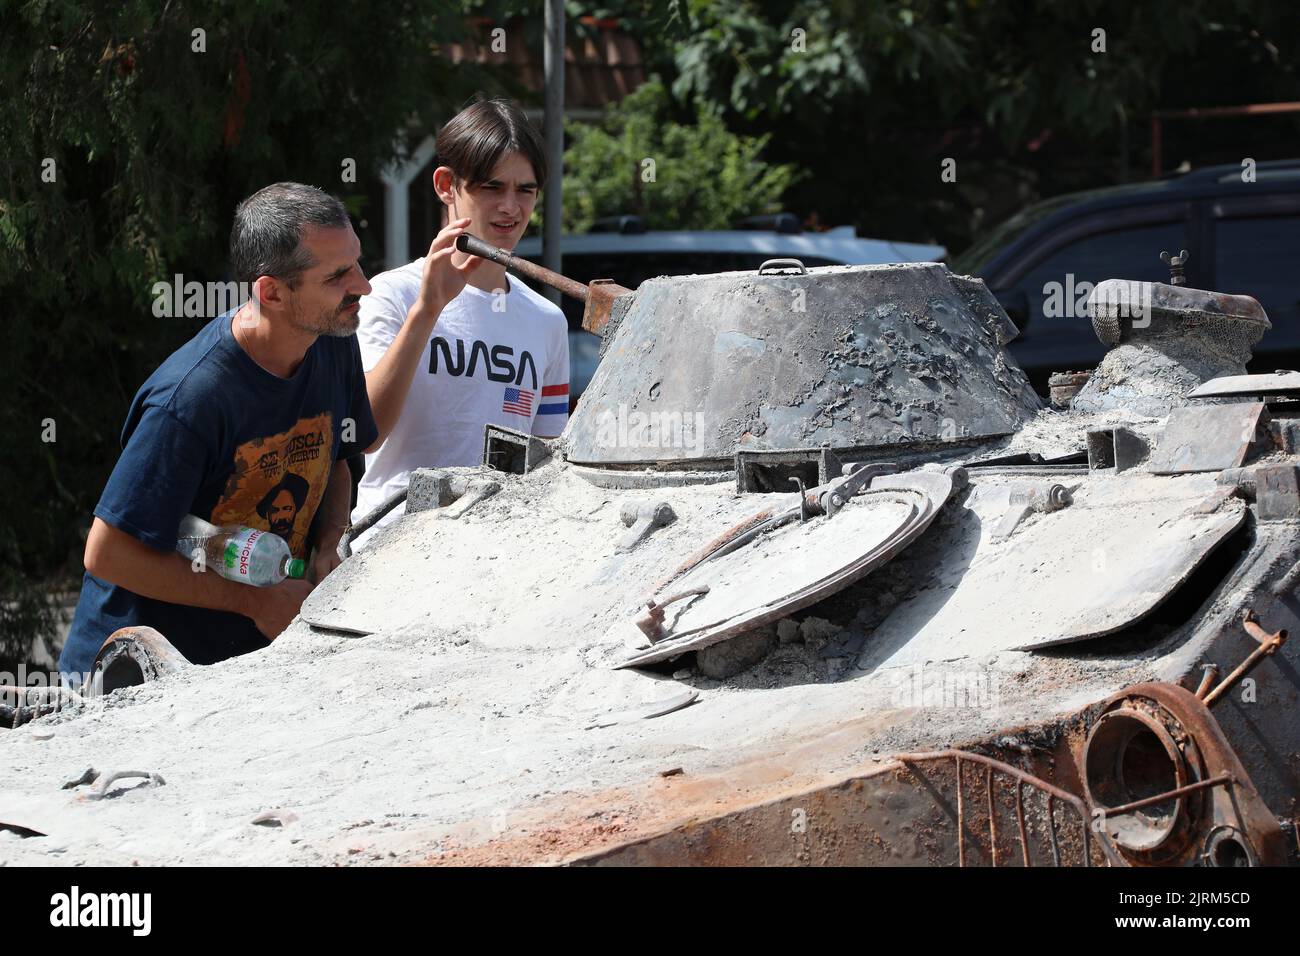 ODESA, UKRAINE - 25. AUGUST 2022 - zwei Männer betrachten eines der russischen Militärfahrzeuge, die von den Streitkräften der Ukraine zerstört wurden und auf der Mem ausgestellt sind Stockfoto